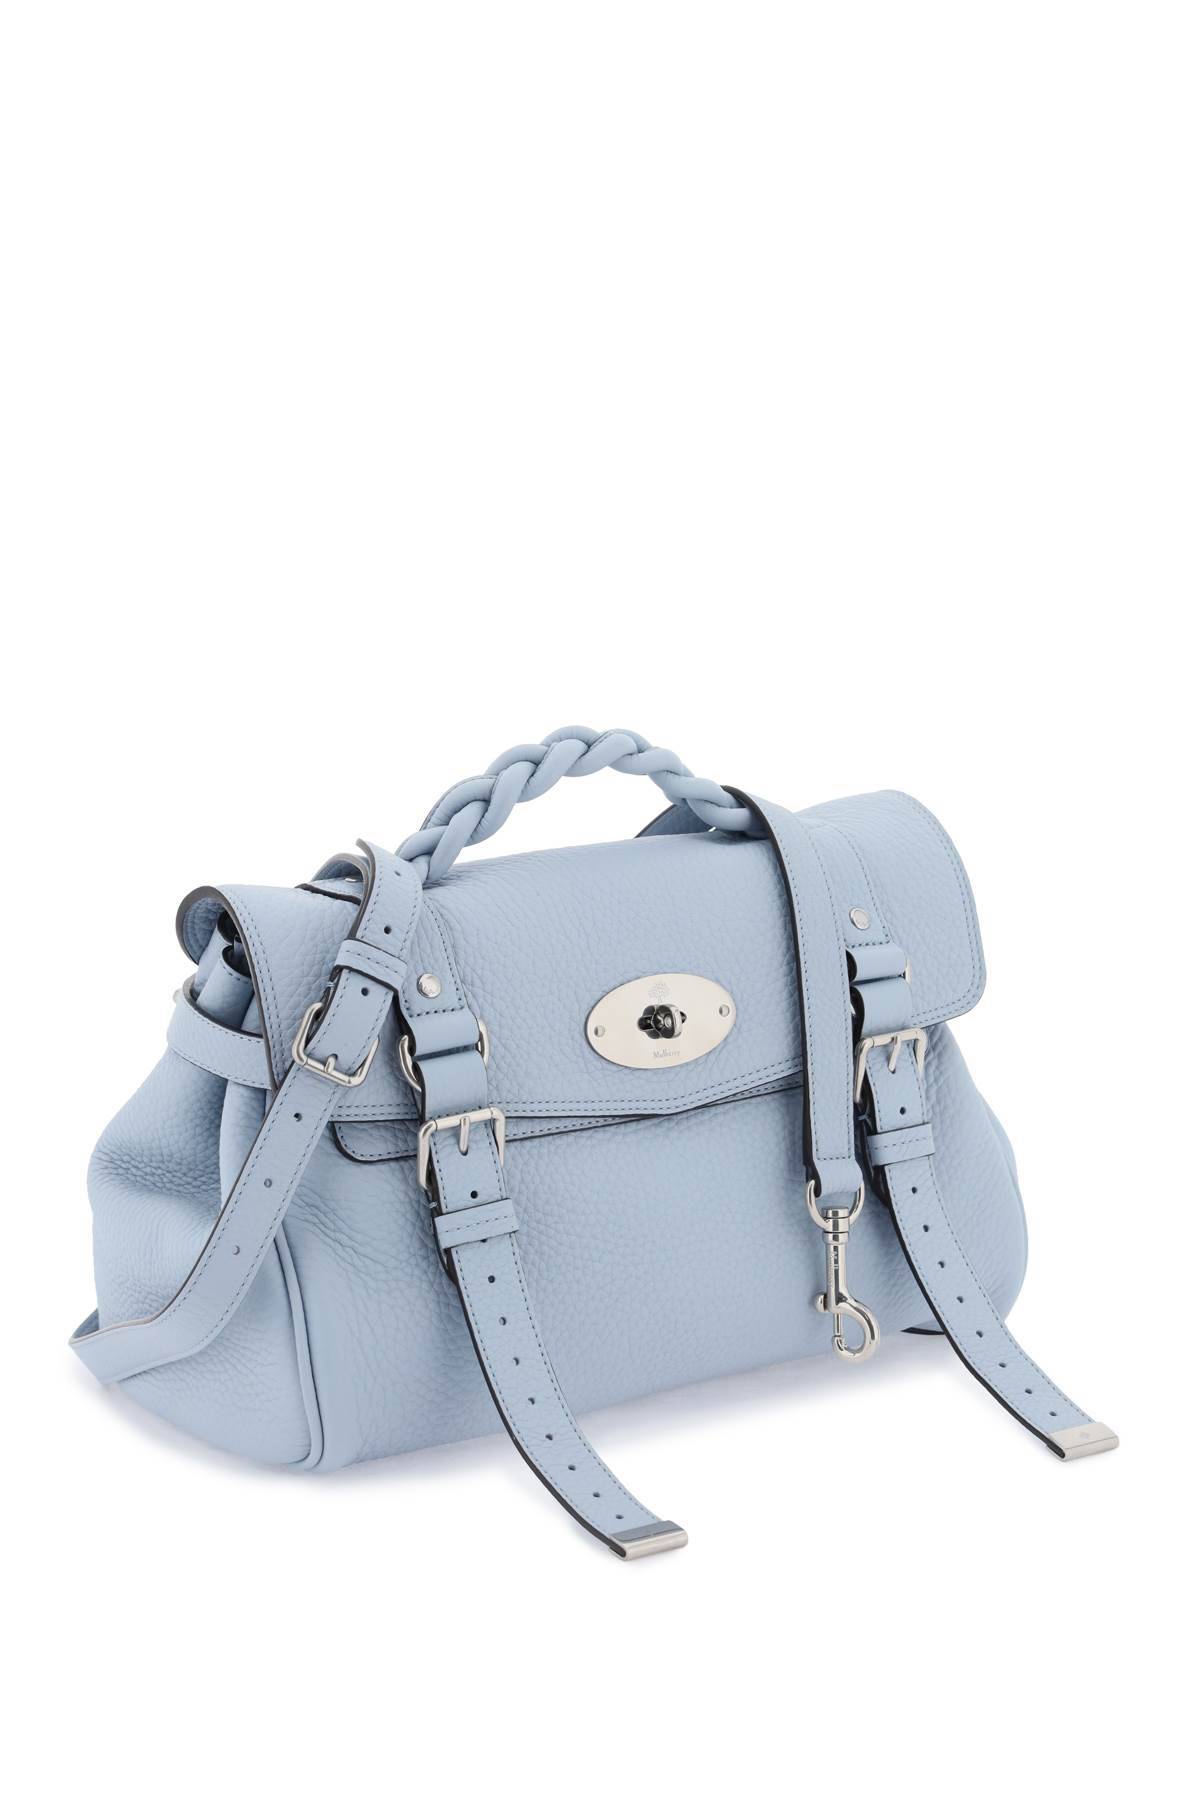 Shop Mulberry Alexa Medium Handbag In Light Blue